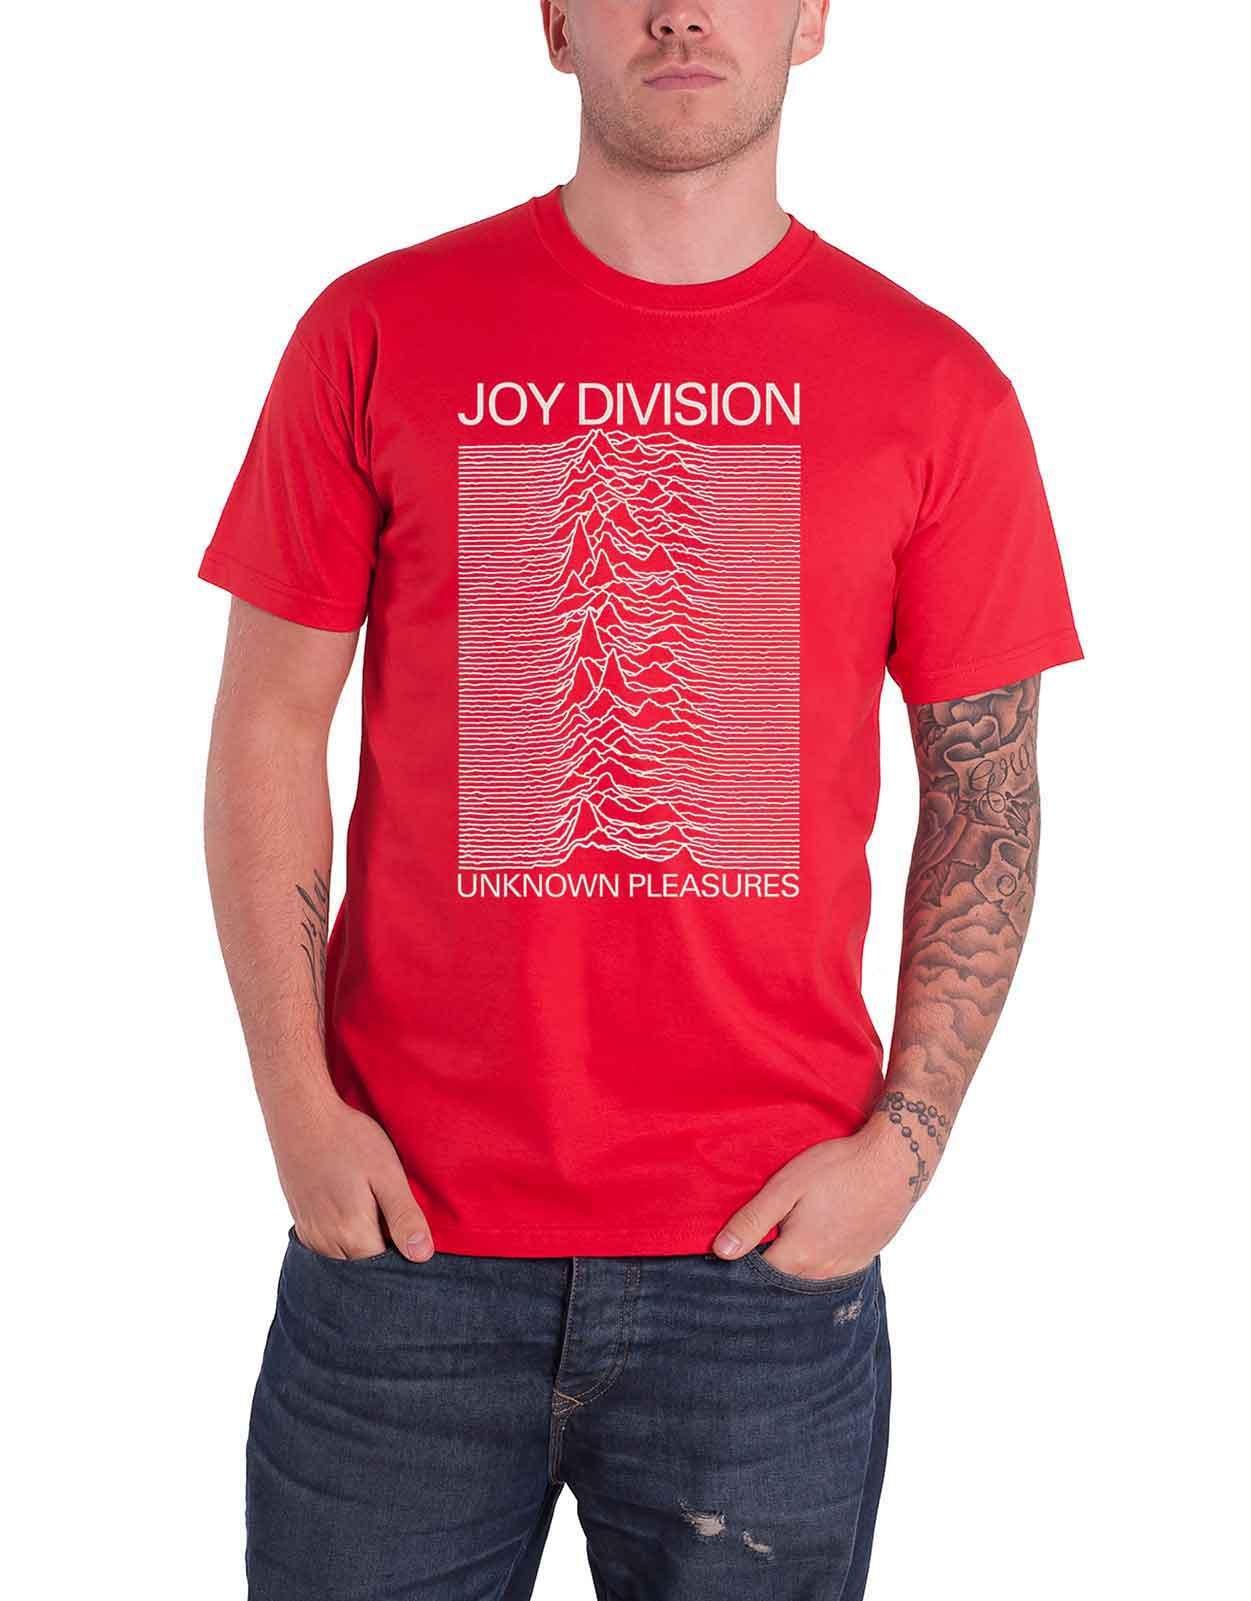 Бело-красная футболка Unknown Pleasures Joy Division, красный футболка joy division футболка dantes инферно joy division готическая рубашка ян кертис post punk рубашка unknown приятности готическая рубашка